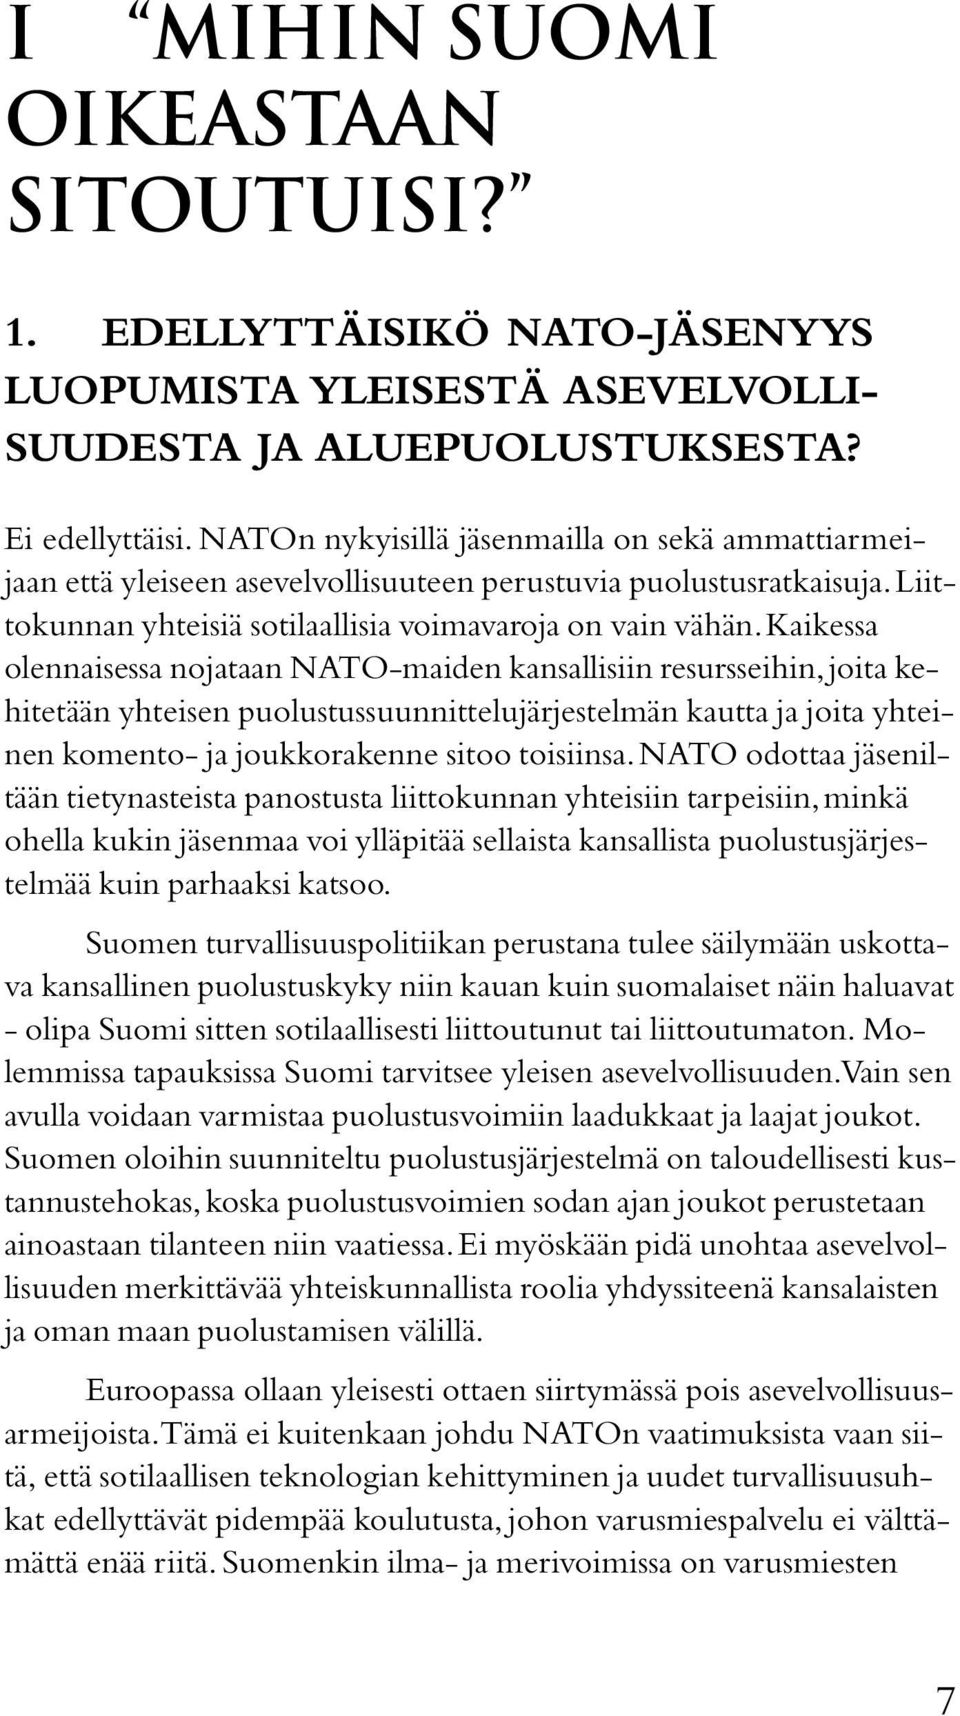 Kaikessa olennaisessa nojataan NATO-maiden kansallisiin resursseihin, joita kehitetään yhteisen puolustussuunnittelujärjestelmän kautta ja joita yhteinen komento- ja joukkorakenne sitoo toisiinsa.